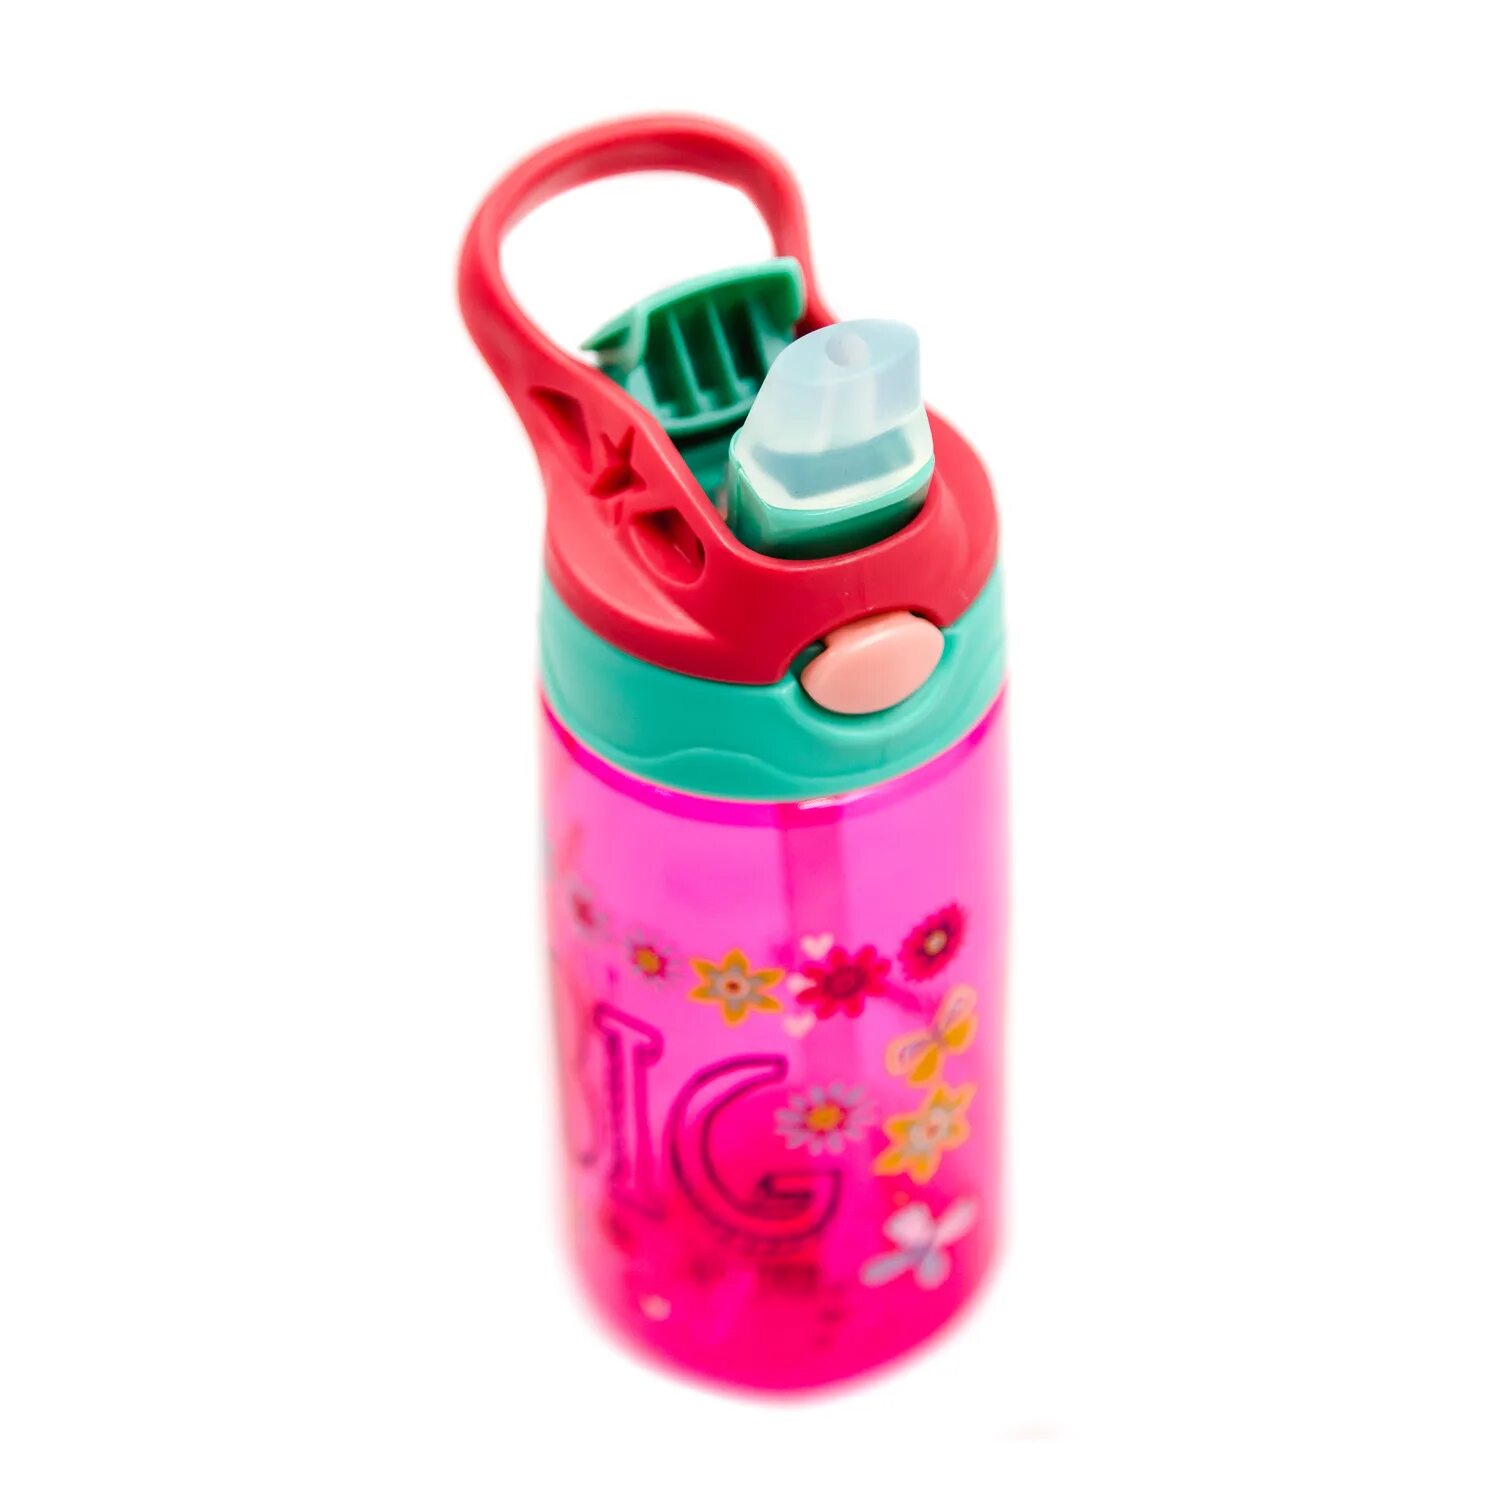 Детский набор. Бутылка для воды с трубочкой diller 8800 450 ml (розовый). Бутилка для воды детске. Ребенок с бутылкой воды. Бутылка для воды детская с трубочкой. Бутылочка с трубочкой